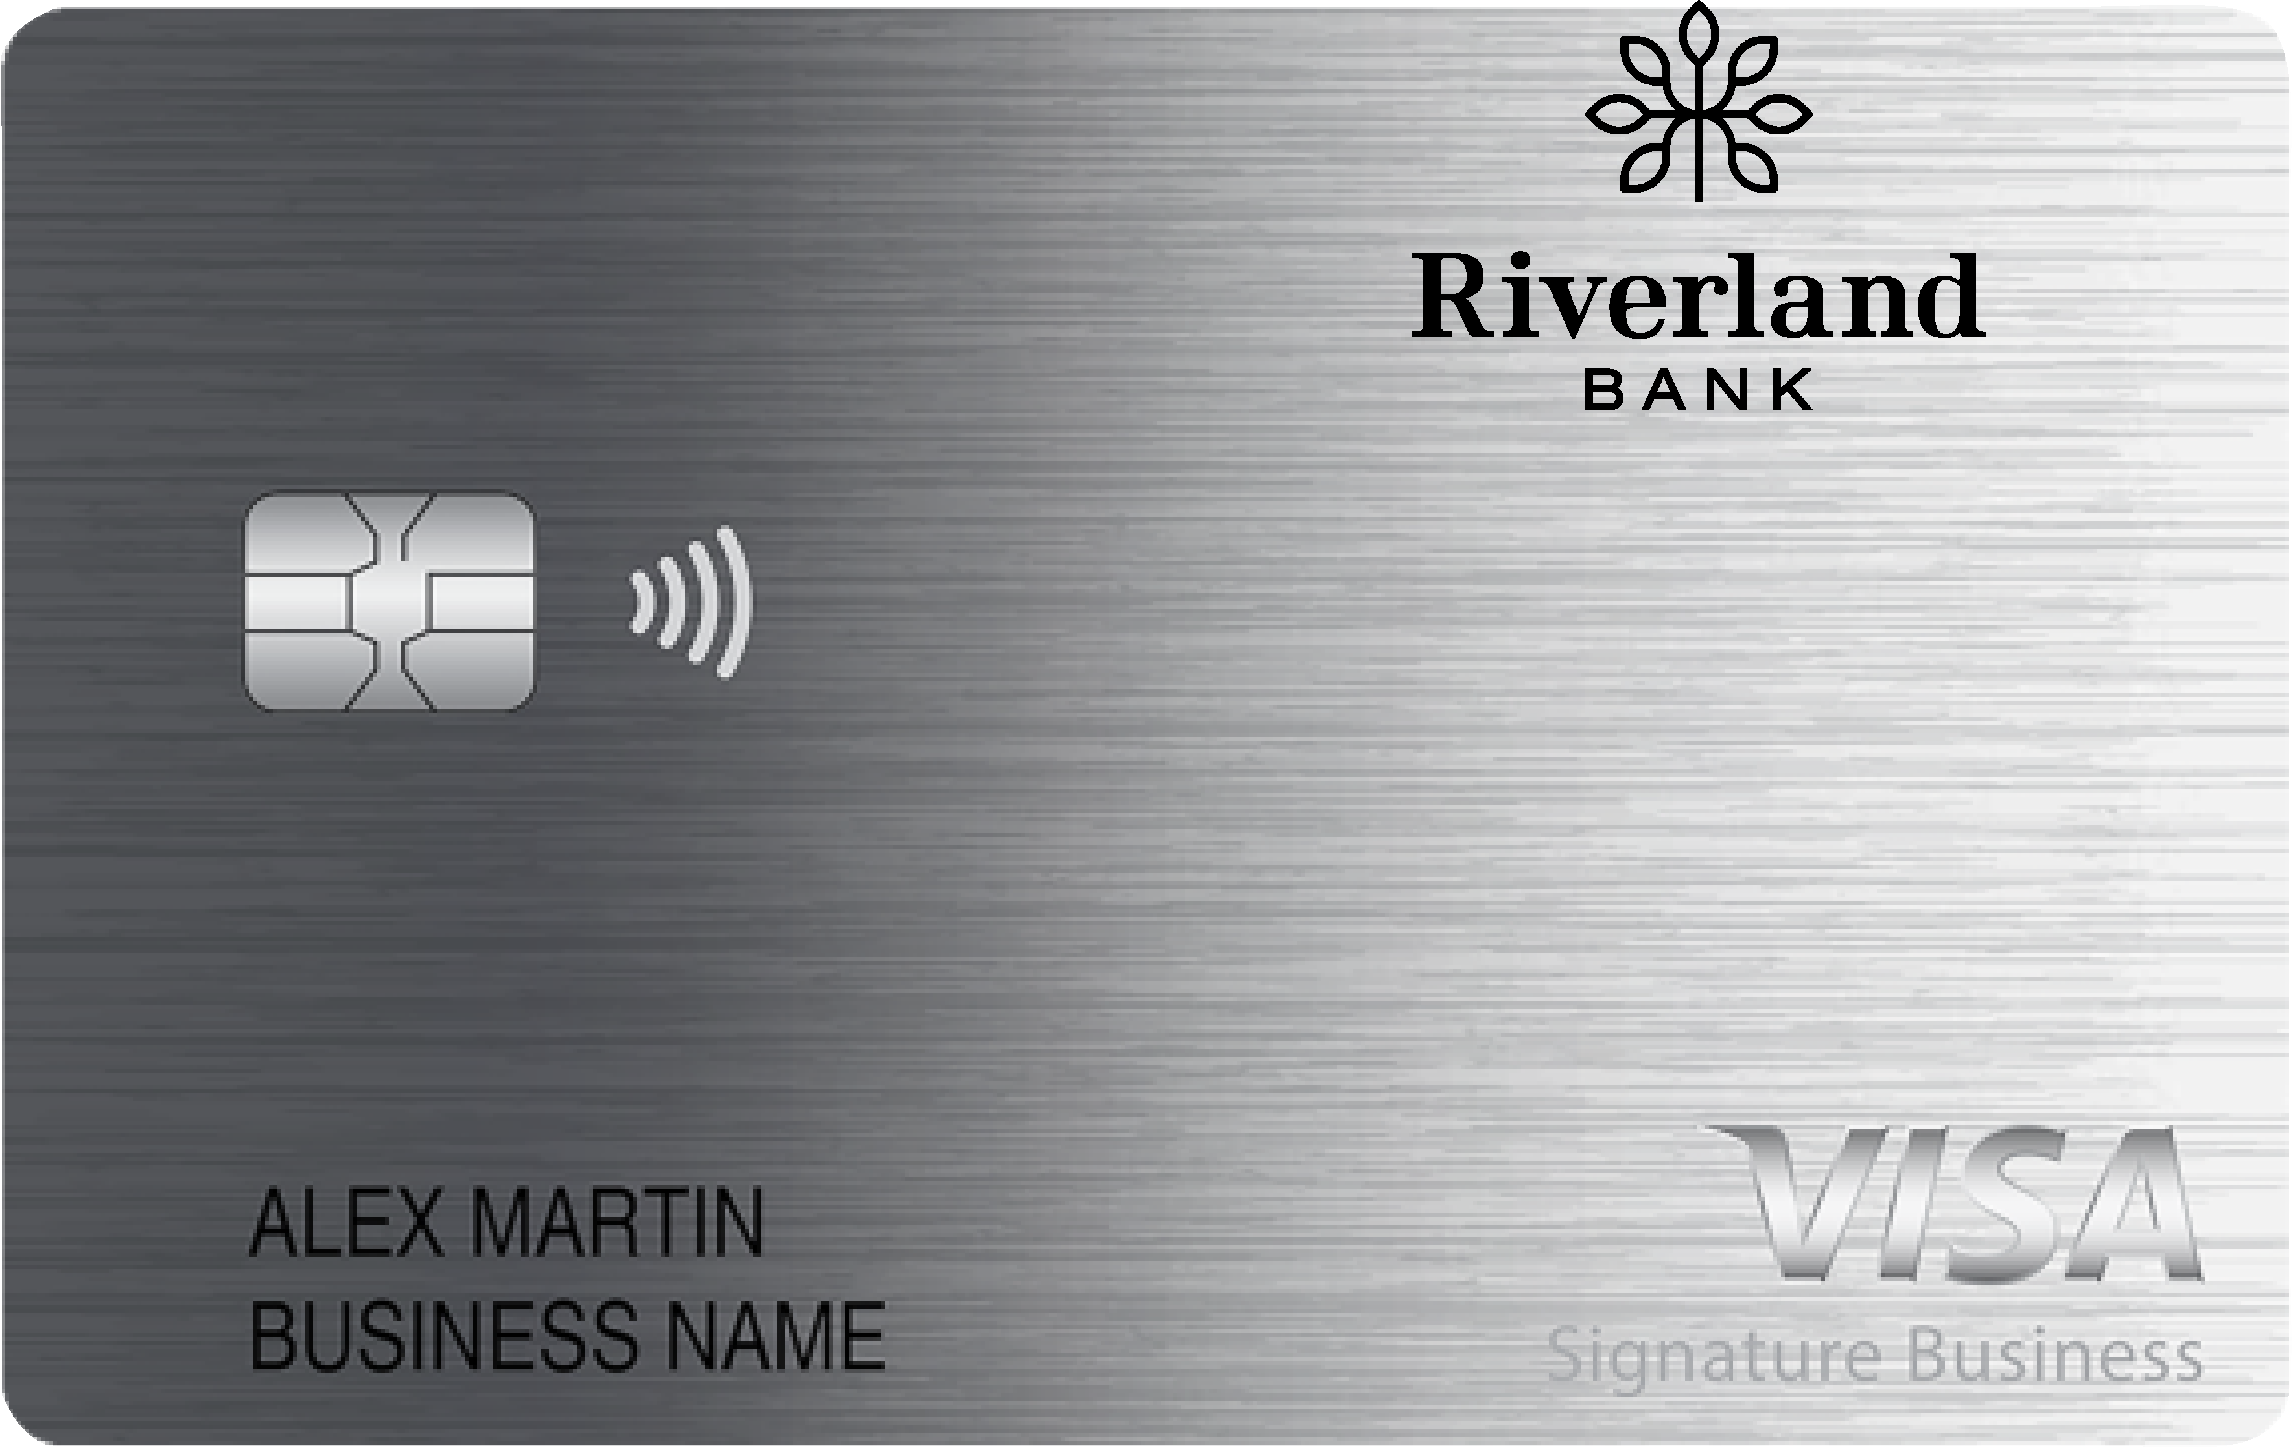 Riverland Bank Smart Business Rewards Card